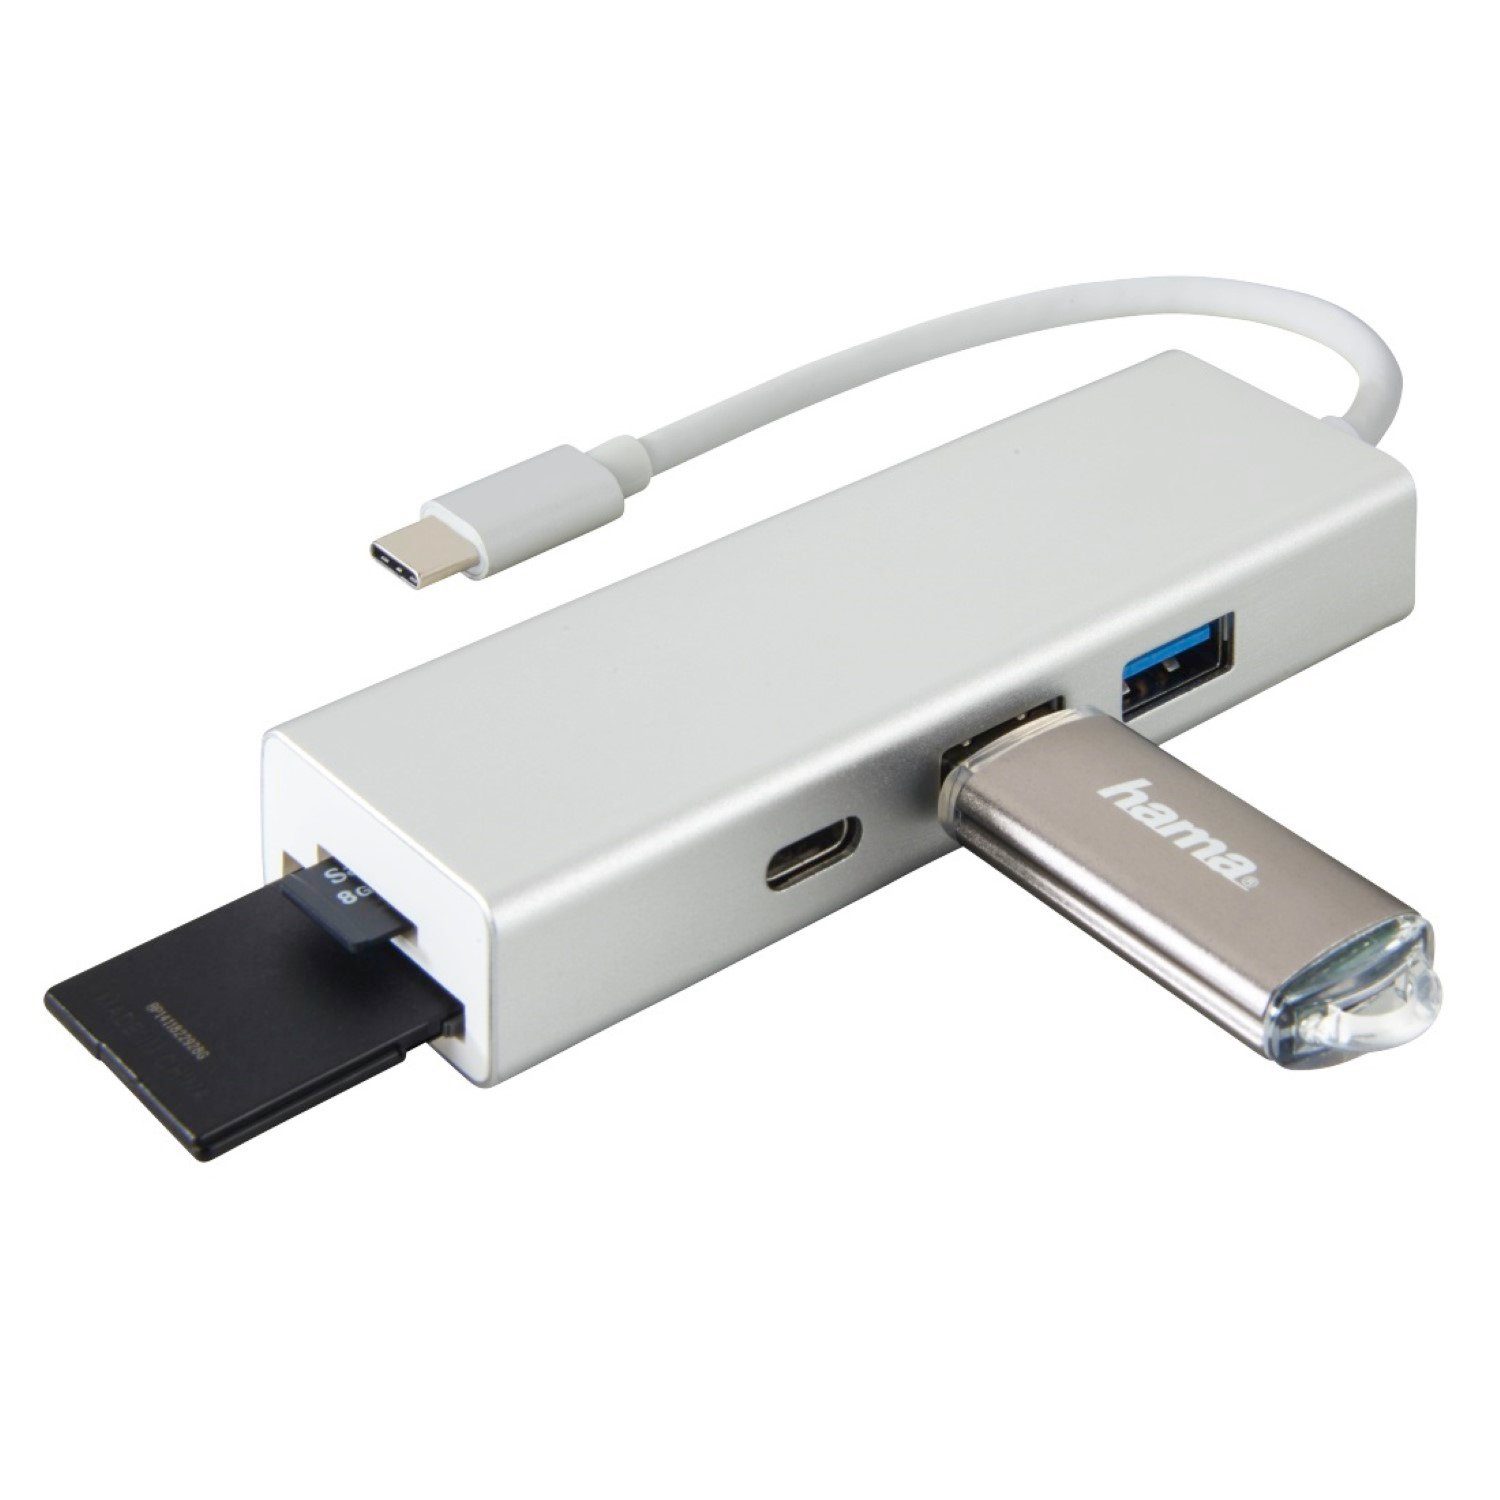 Hama »USB-C USB-Hub 1:3 Kartenleser USB Adapter« USB-Kabel, SuperSpeed USB  Type-C 3.1, Card-Reader für SD / MicroSD, USB-Verteiler 1 zu 3 Ports,  Bus-powered, Abwärtskompatibel zu USB-3.0 und USB-2.0-Geräten,  Aluminium-Oberfläche online kaufen